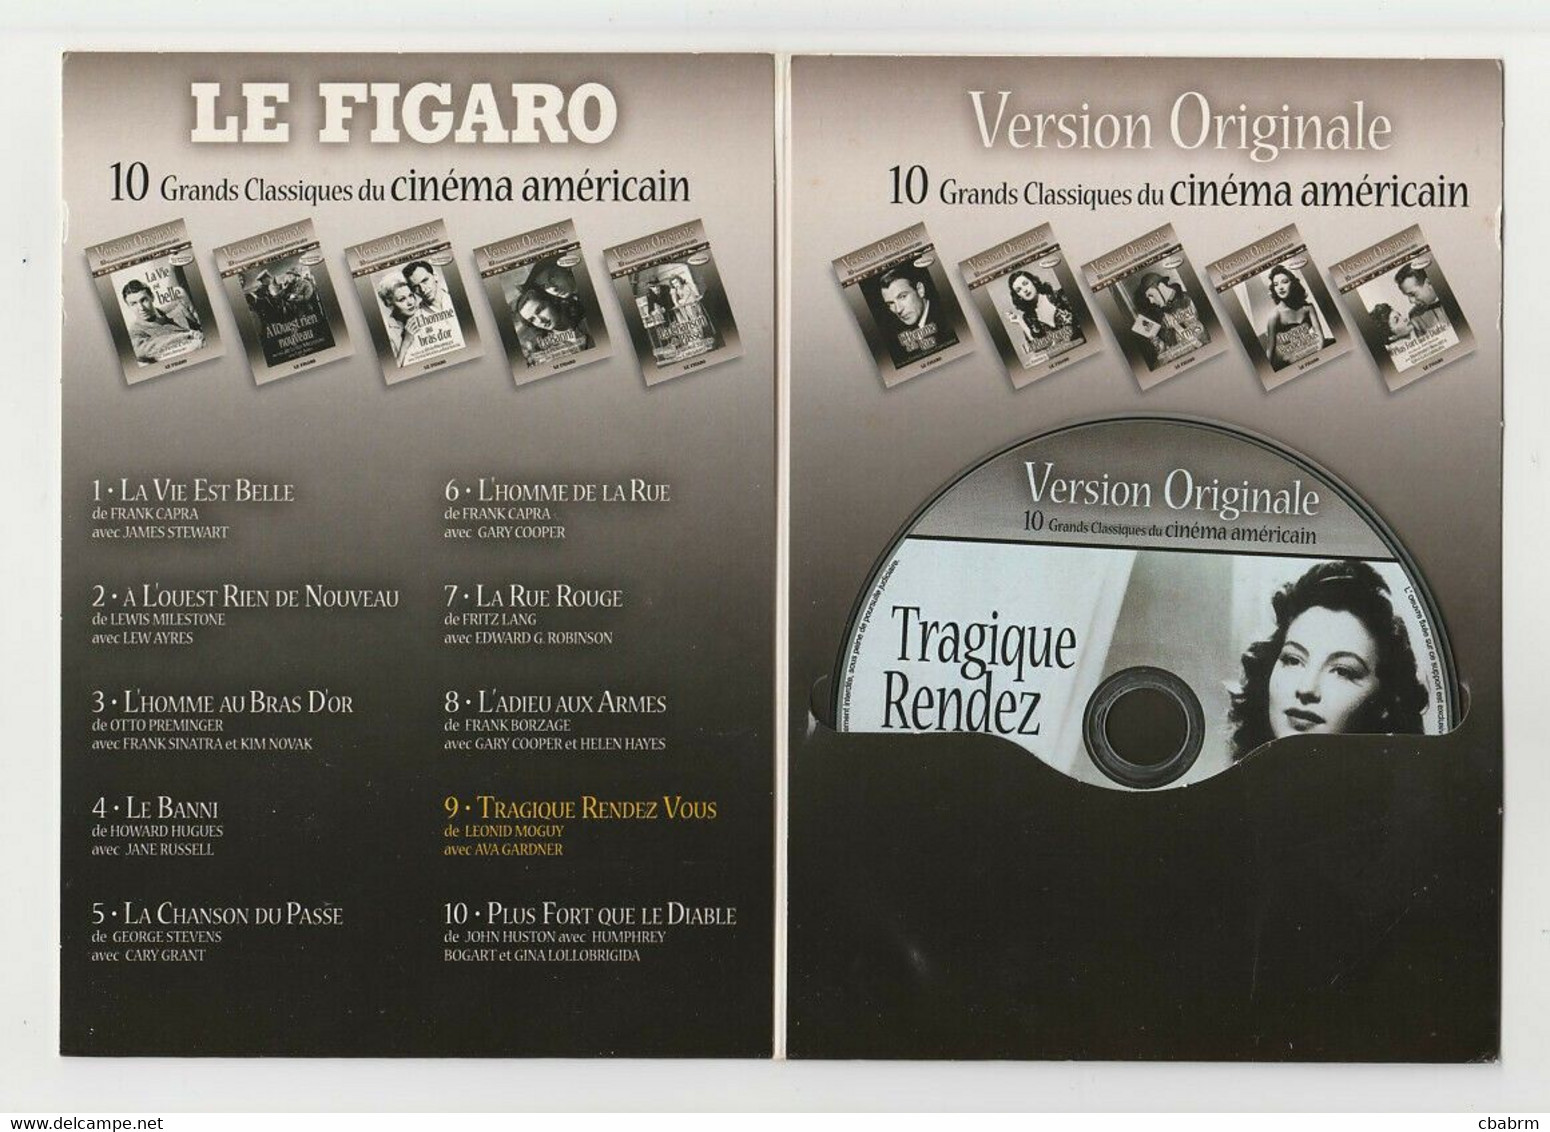 DVD TRAGIQUE RENDEZ VOUS De LEONID MOGUY Avec AVA GARDNER GEORGE RAFT TOM CONWAY - Classic